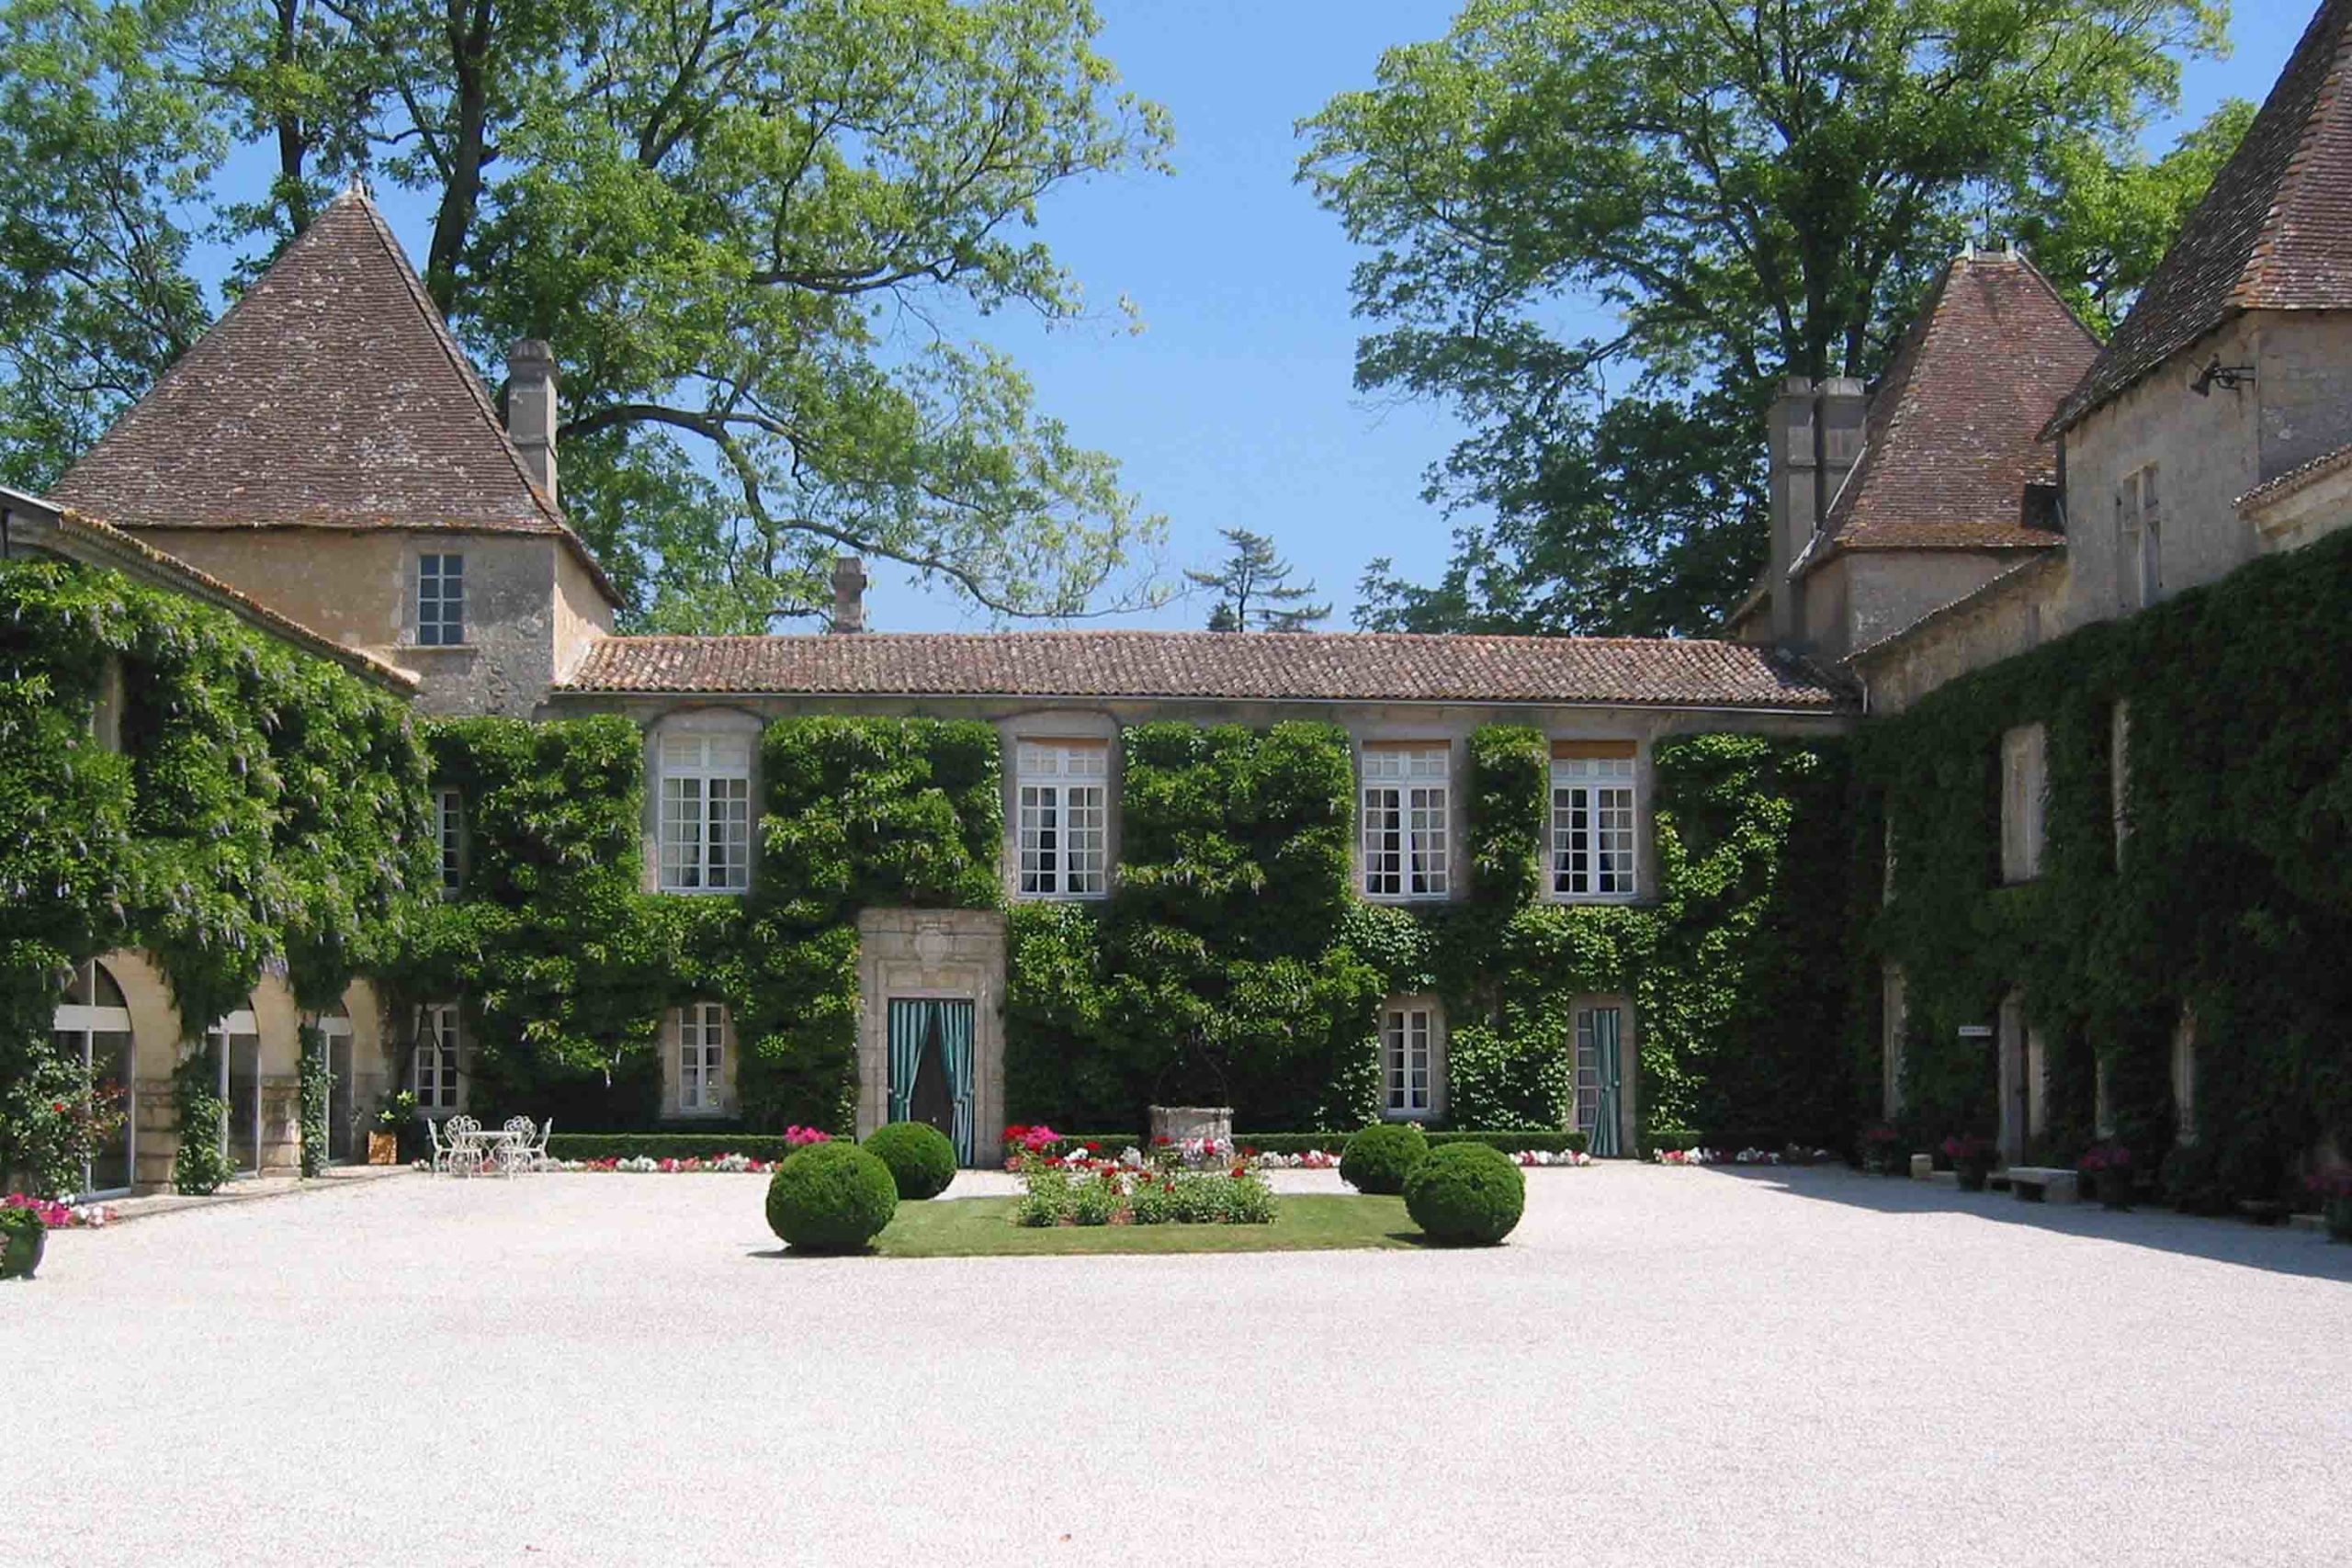 Chateau Carbonnieux